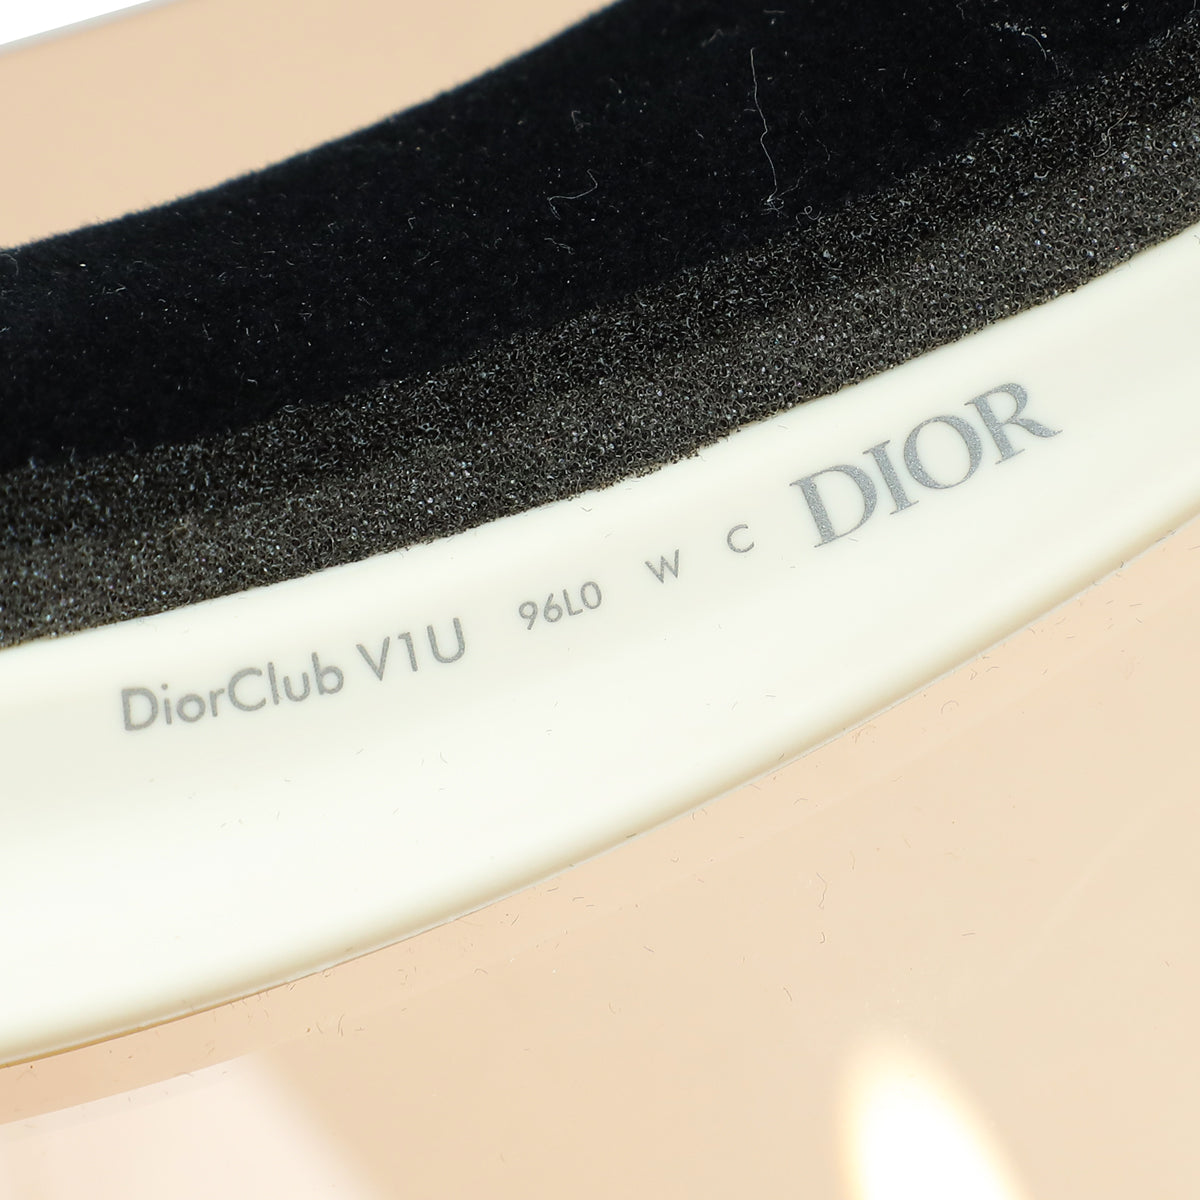 Christian Dior Bicolor DiorClub V1U Visor